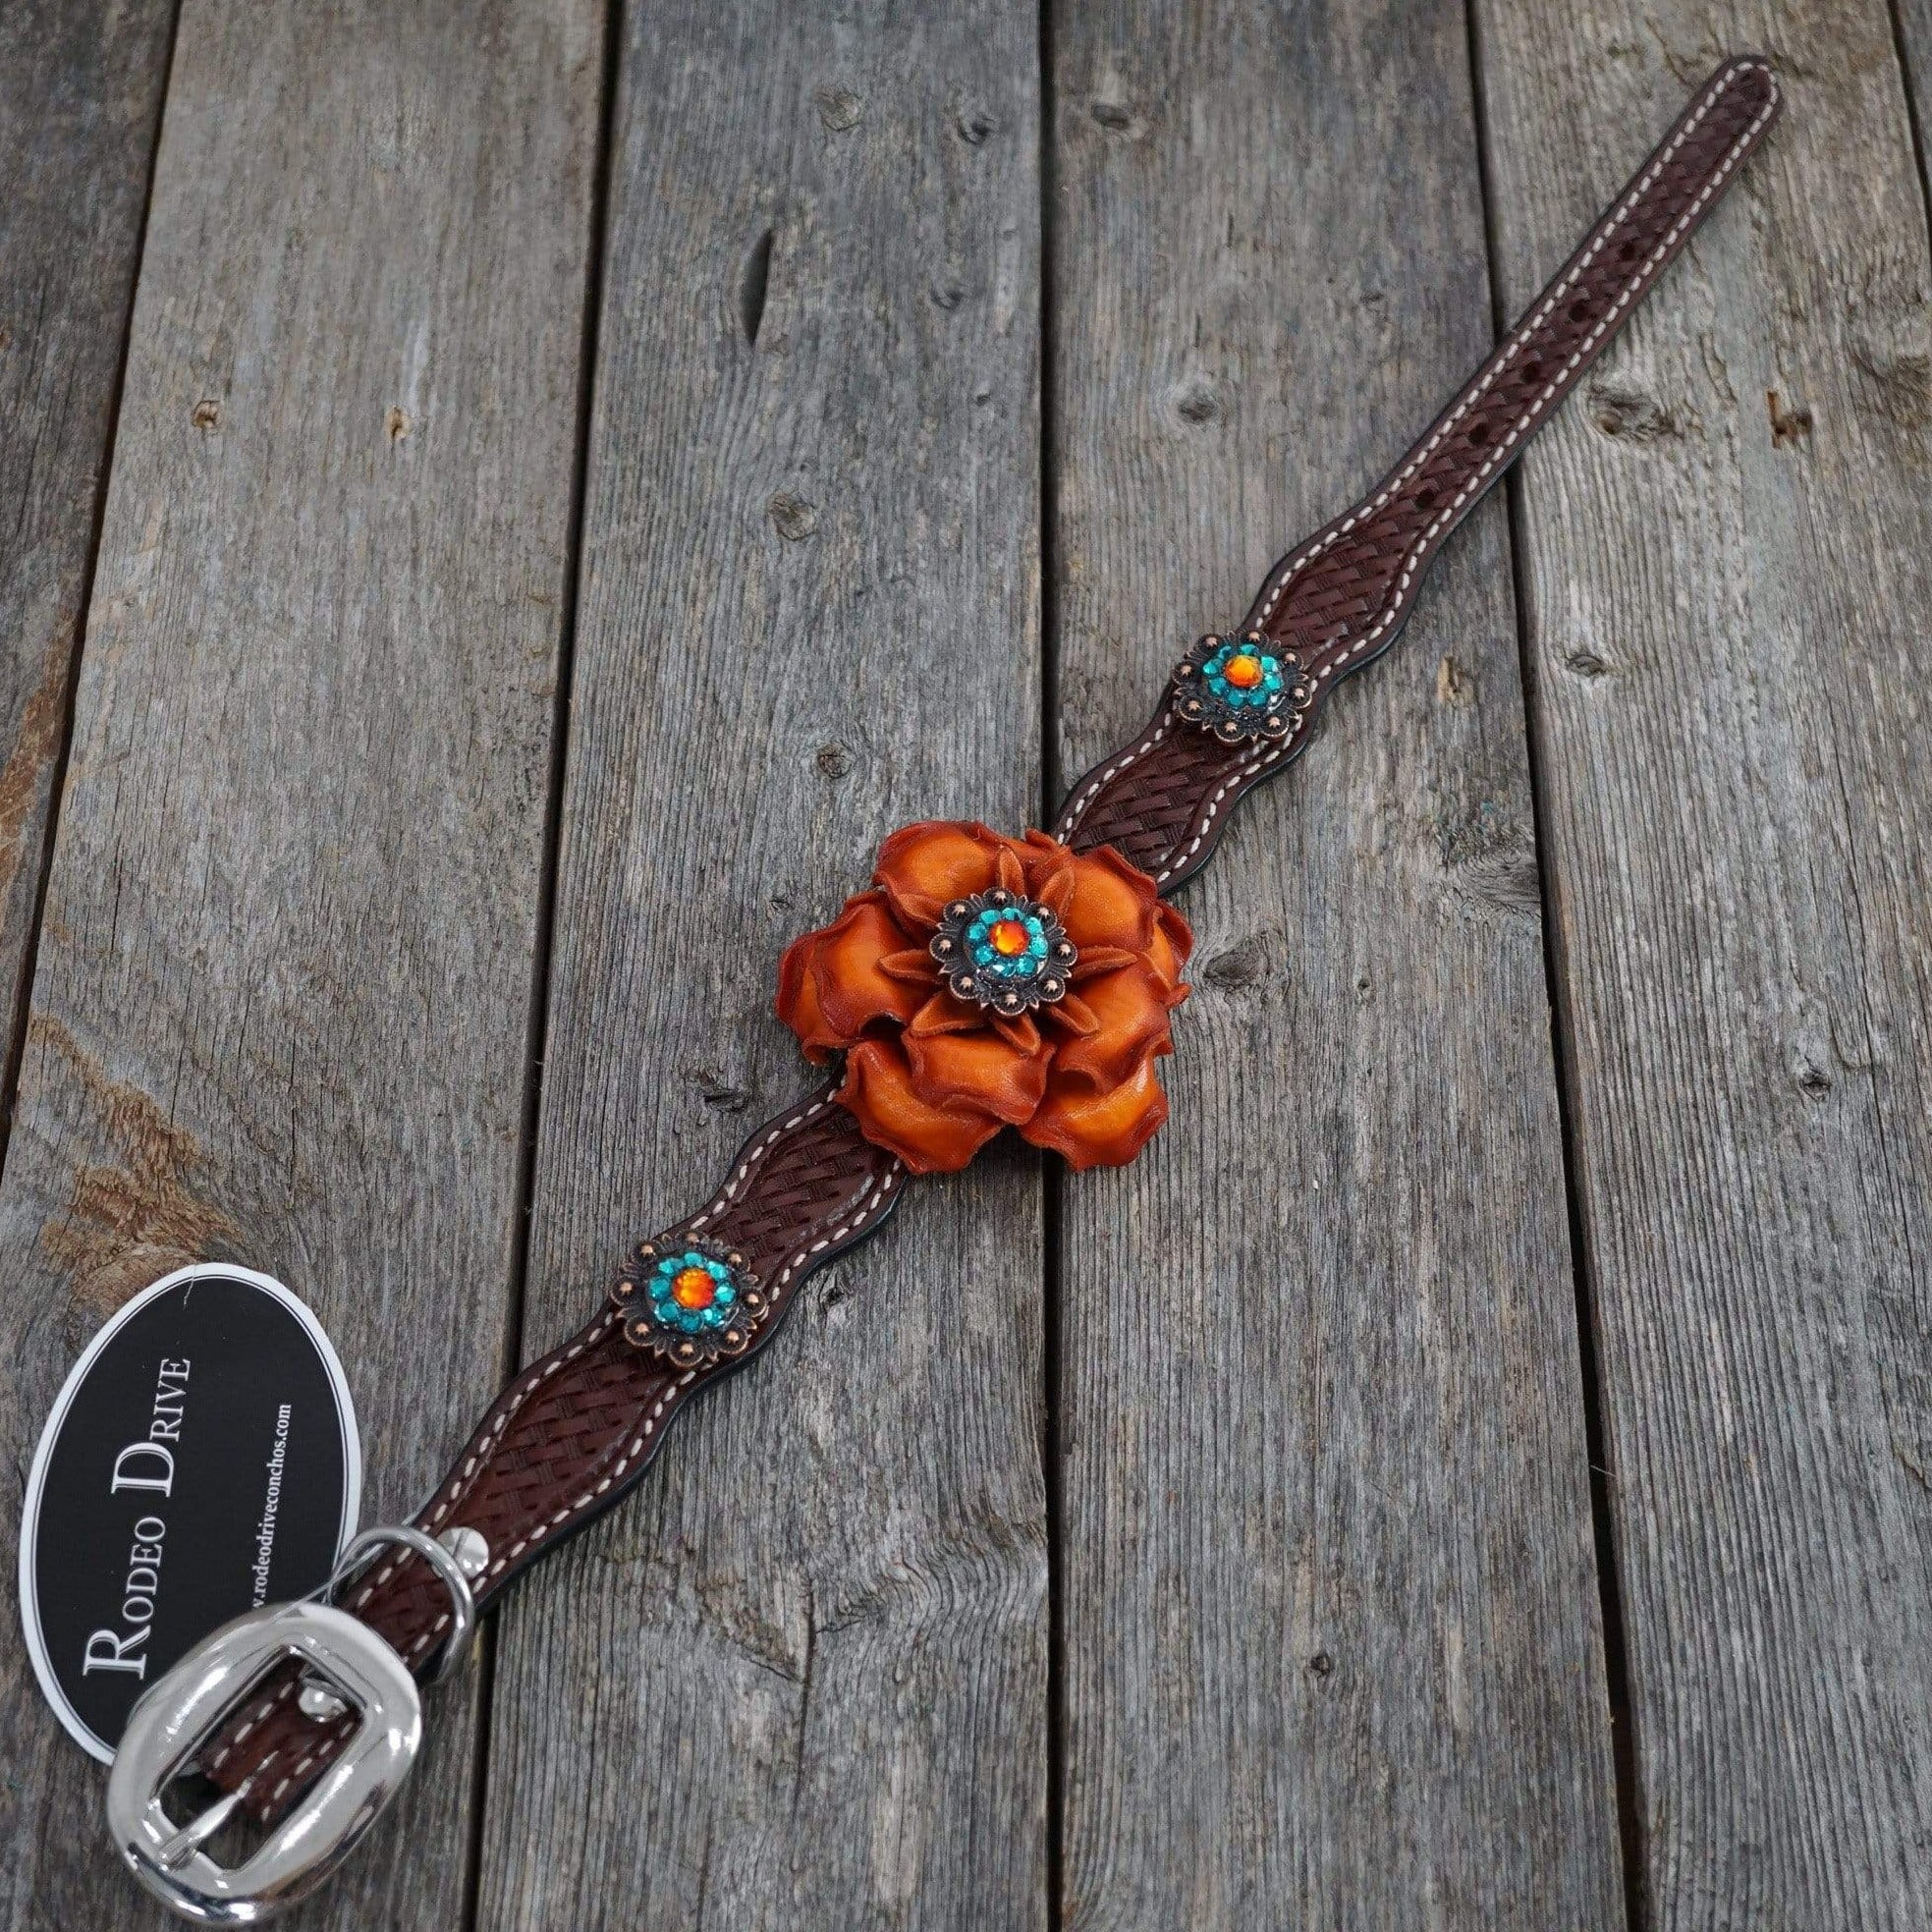 DC27 -Medium Oil Leather Dog Collar - Orange Flower & Copper Conchos 10